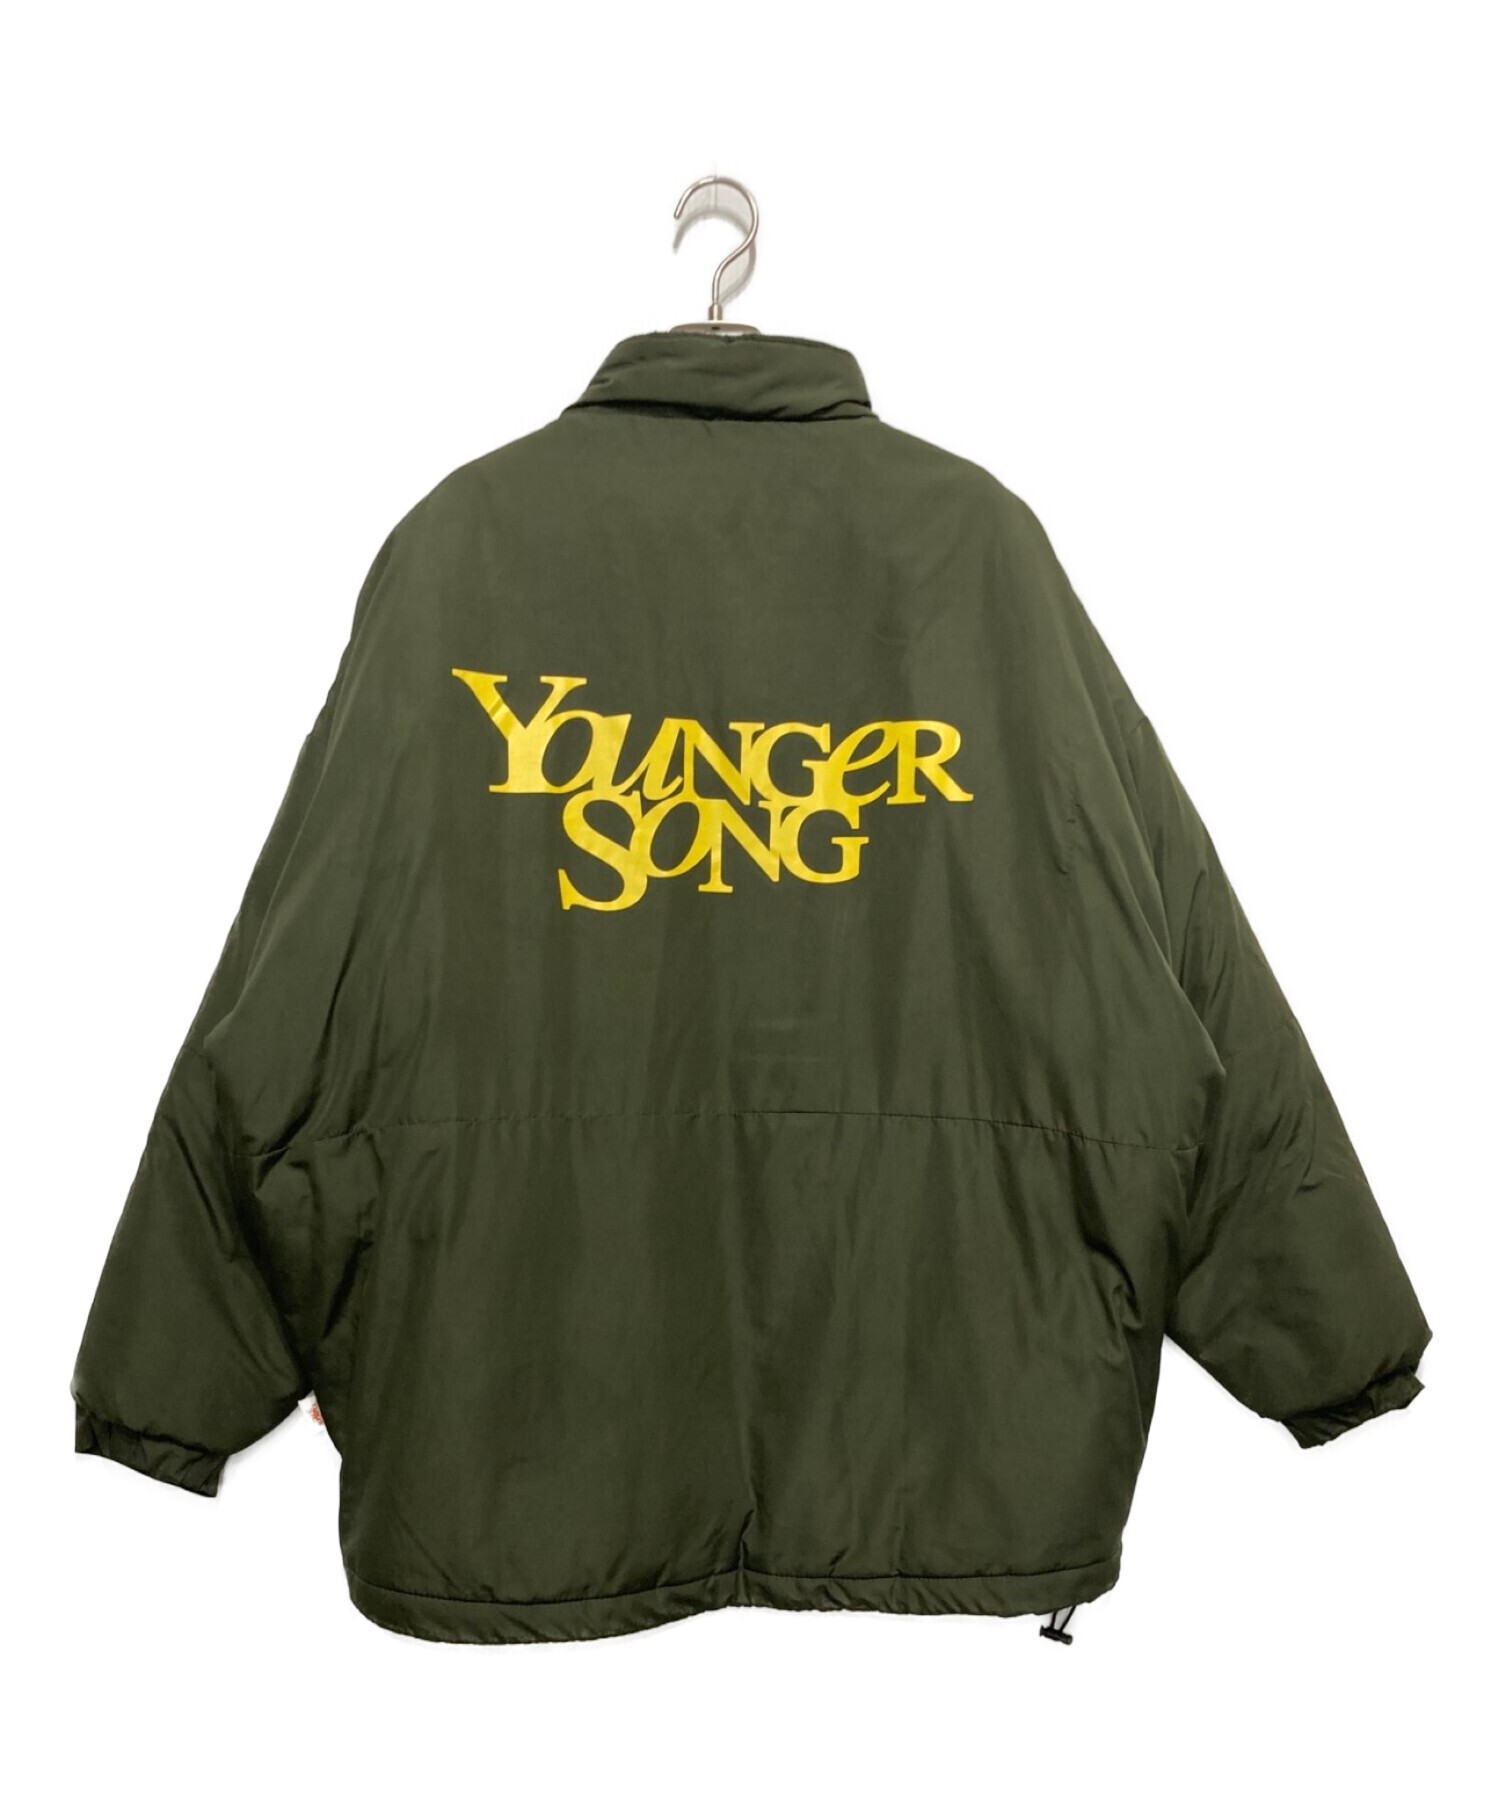 YOUNGER SONG (ヤンガーソング) モンスターパーカー オリーブ サイズ:Ⅿ